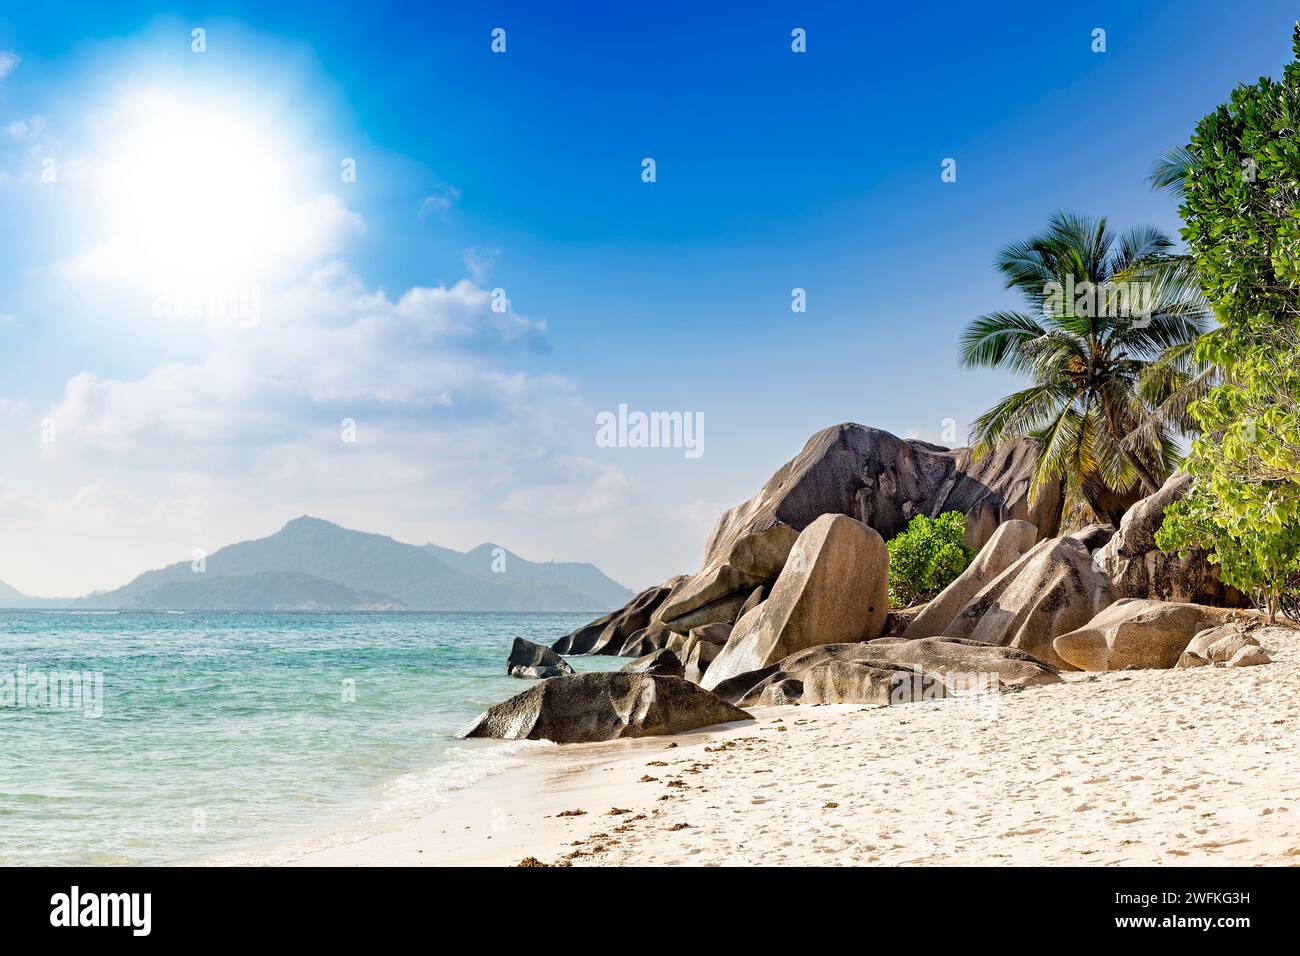 Playa de la isla tropical de arena blanca, palmeras, cielo azul, famosa fuente de anse d'argent en La Digue, islas Seychelles. Poca profundidad de campo con enfoque Foto de stock